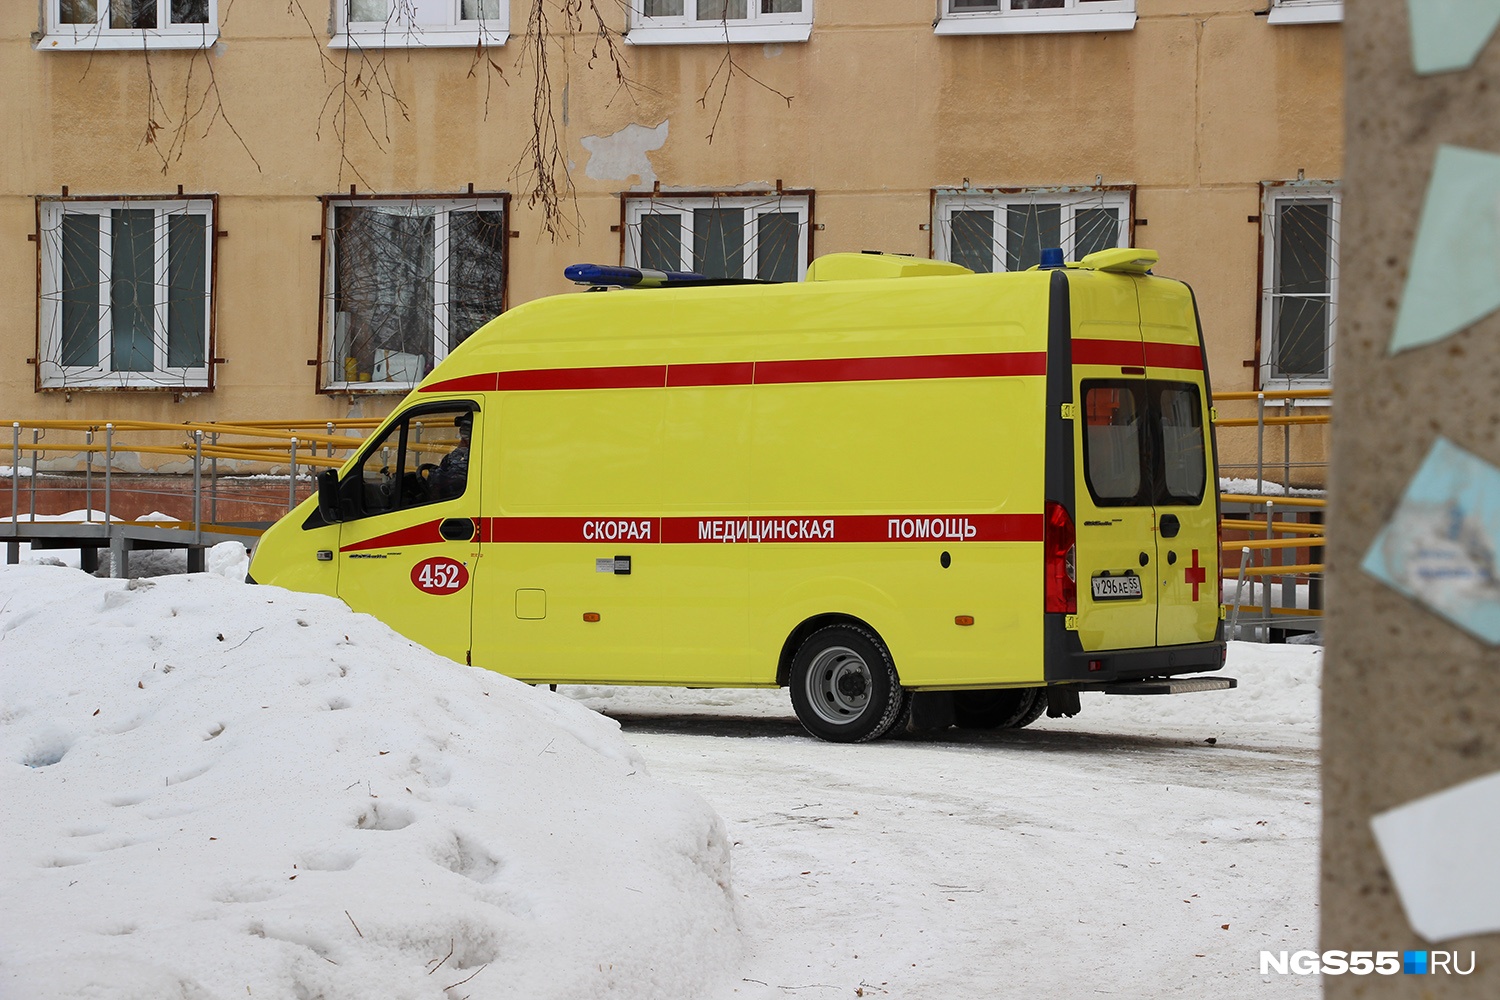 Два человека погибли, один в больнице: на трассе Омск-Тара произошла страшная авария